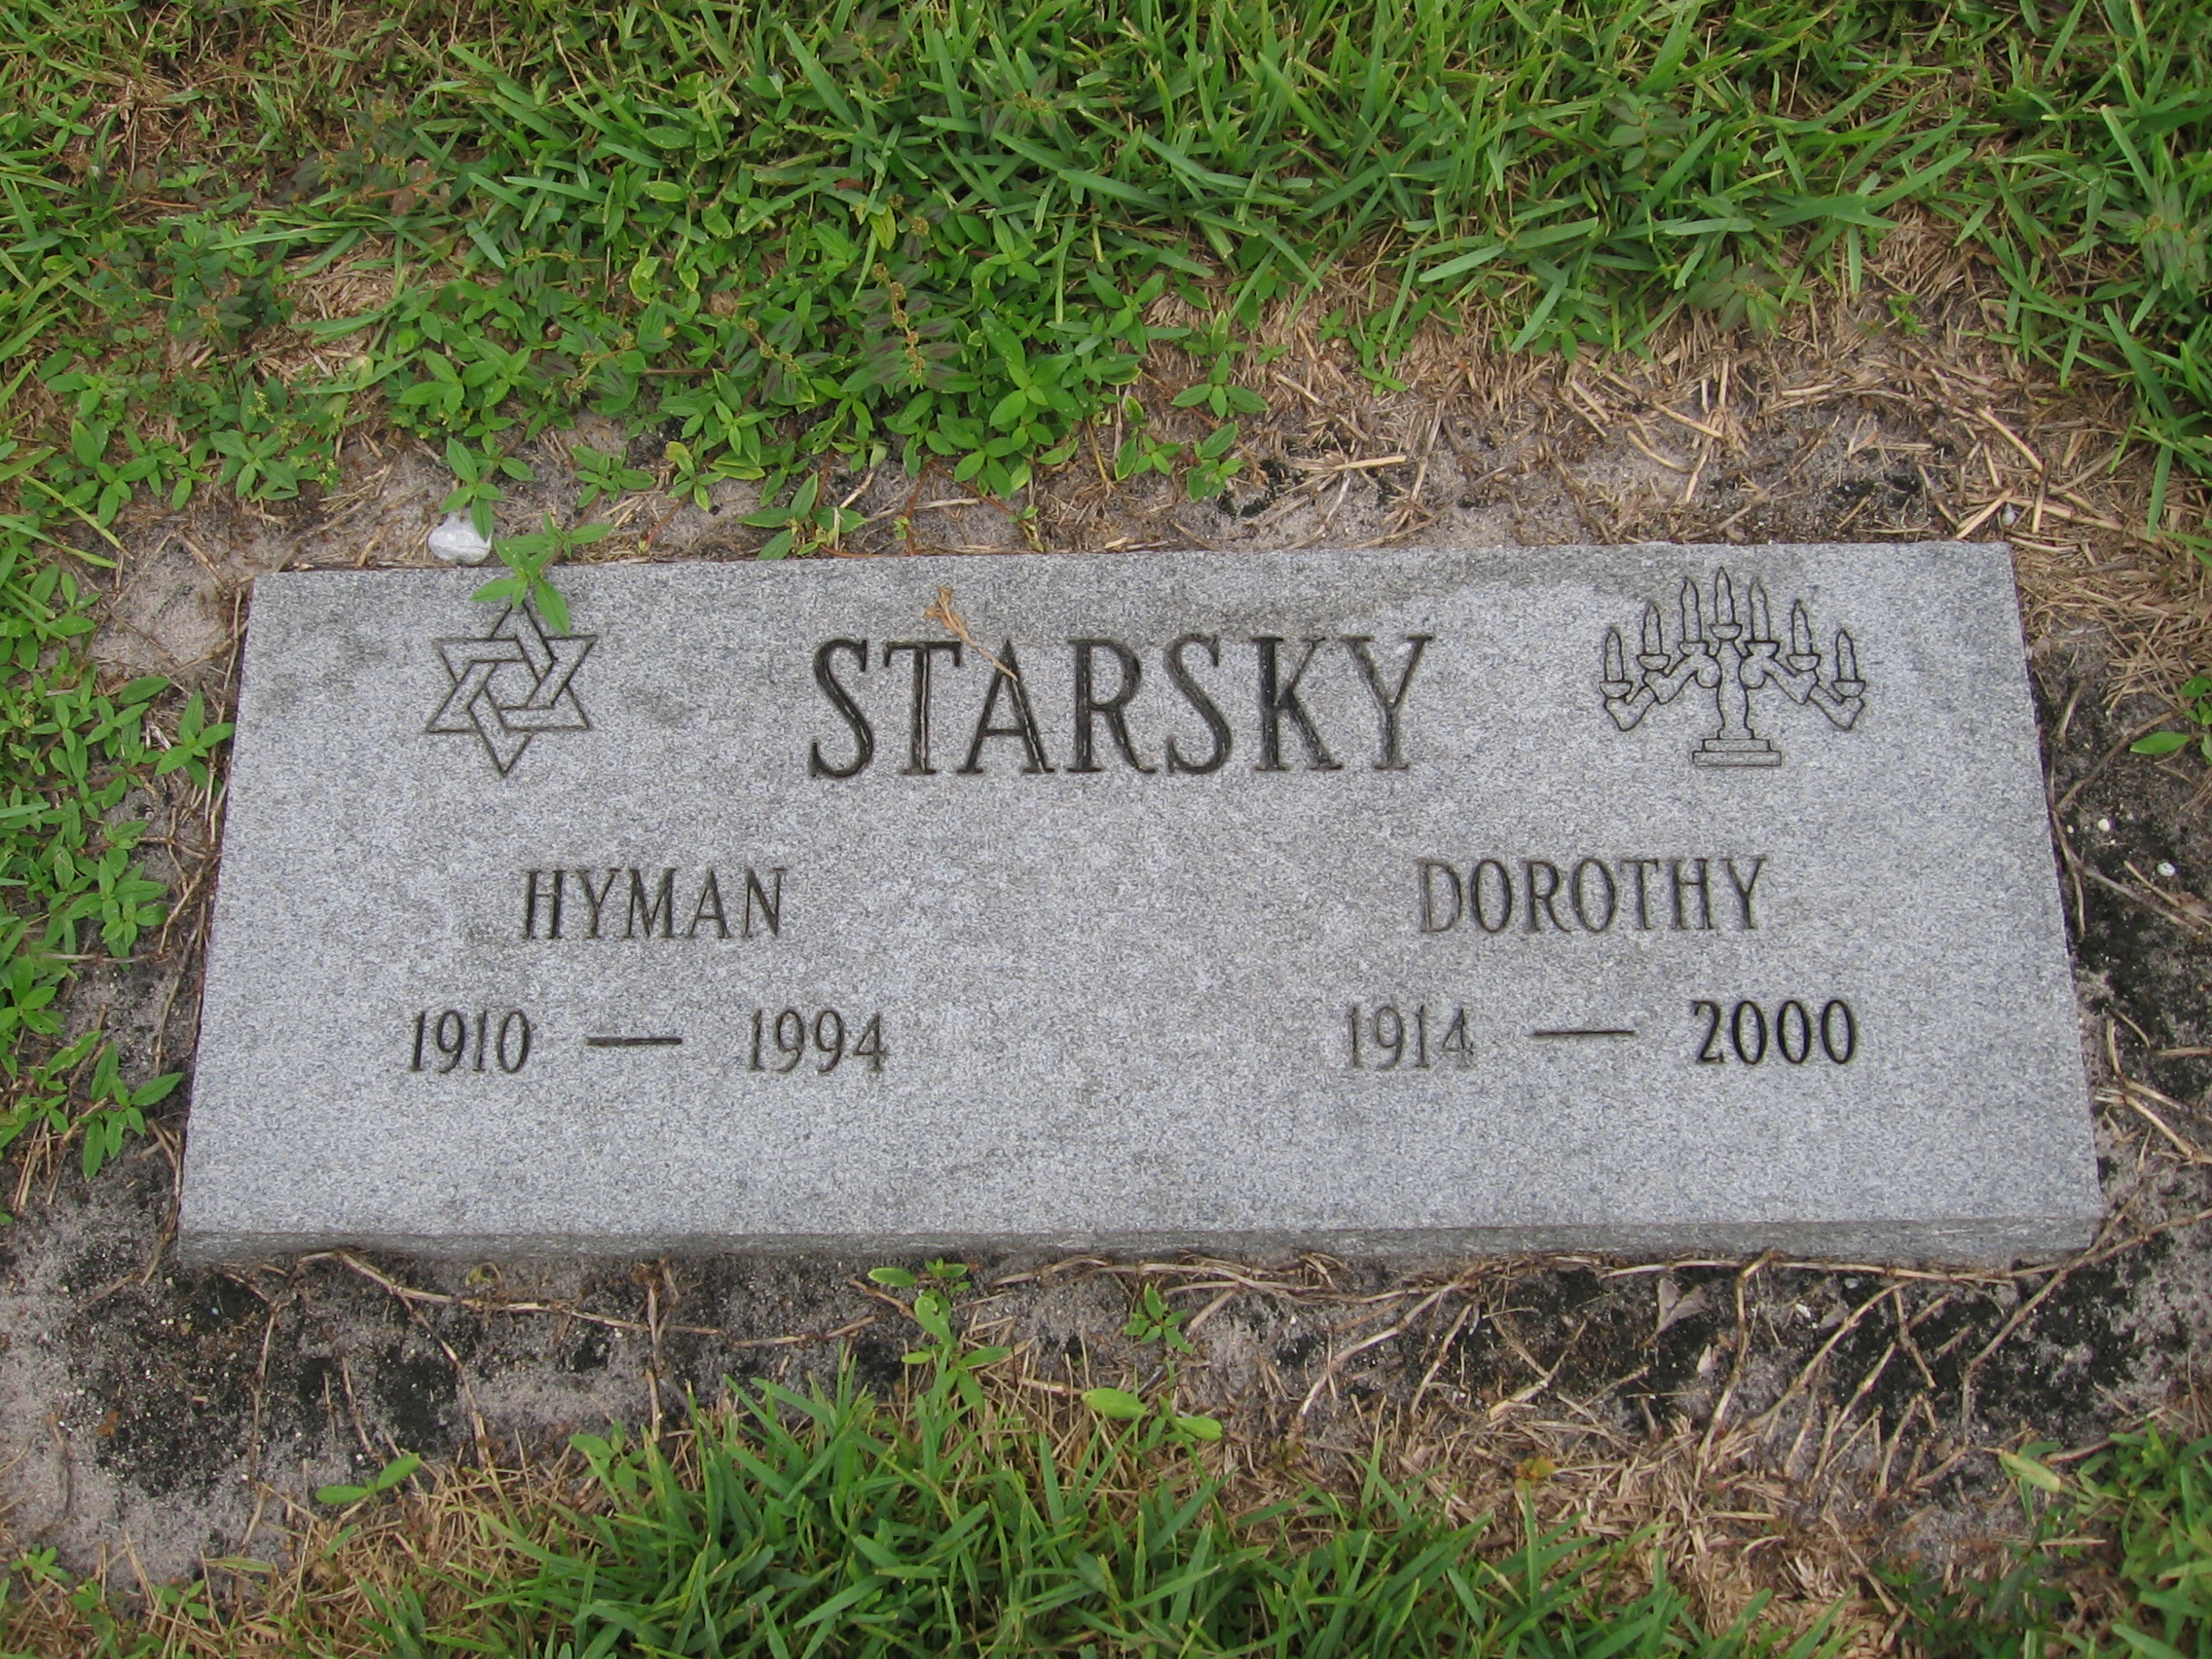 Dorothy Starsky